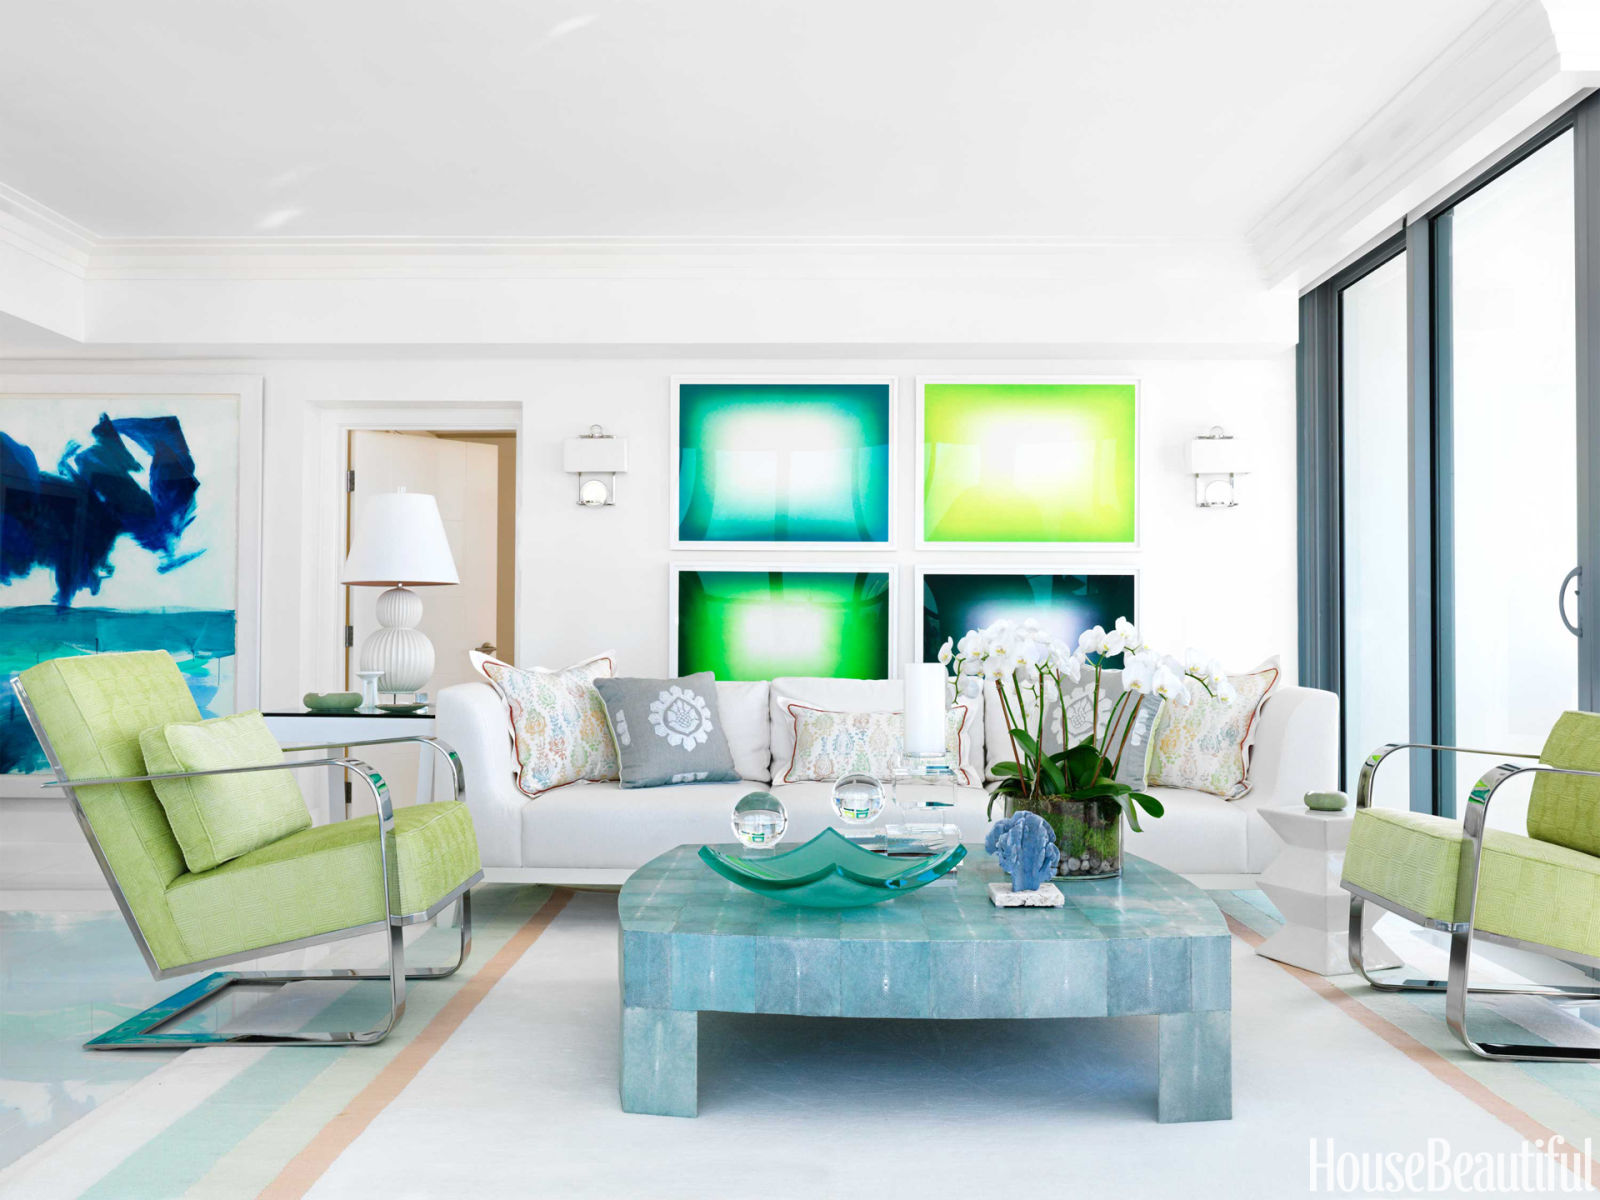 50 Best Living Room Design Ideas for 2021